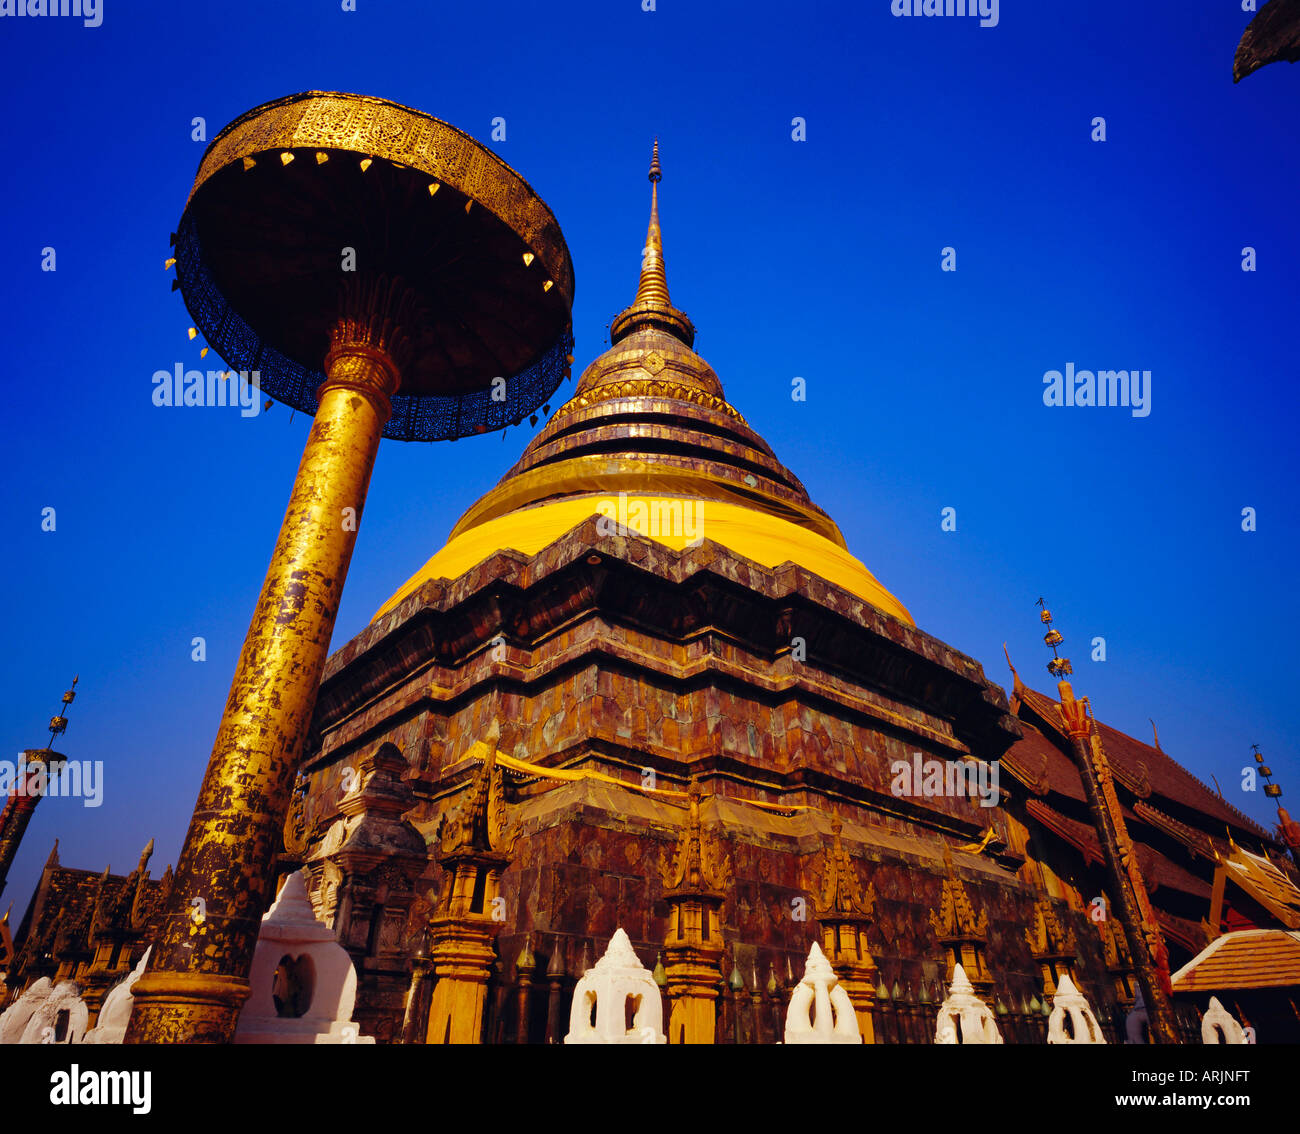 Chedi principal et parapluie dans un style Lanna, Wat Phra That Lampang Luang, province de Lampang, Thaïlande Banque D'Images